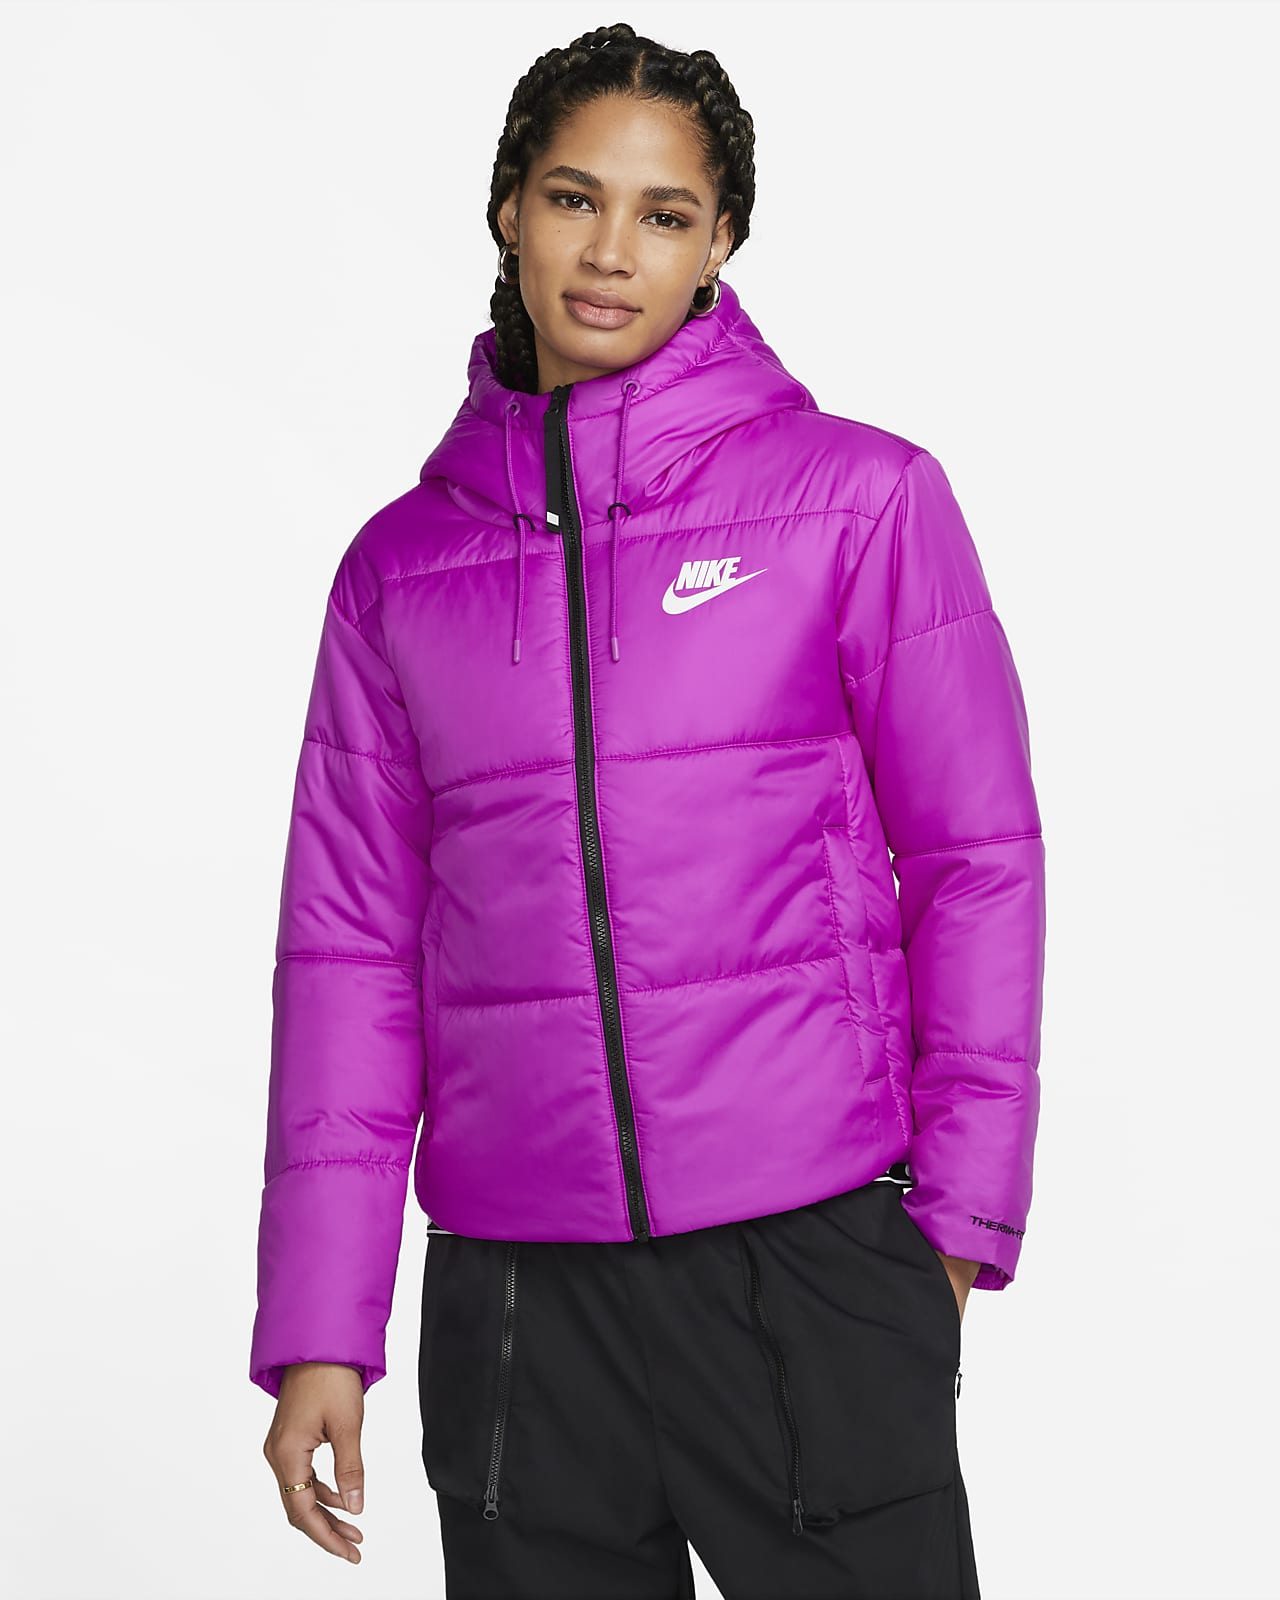 Nike Sportswear Therma-FIT Repel Women's Jacket.